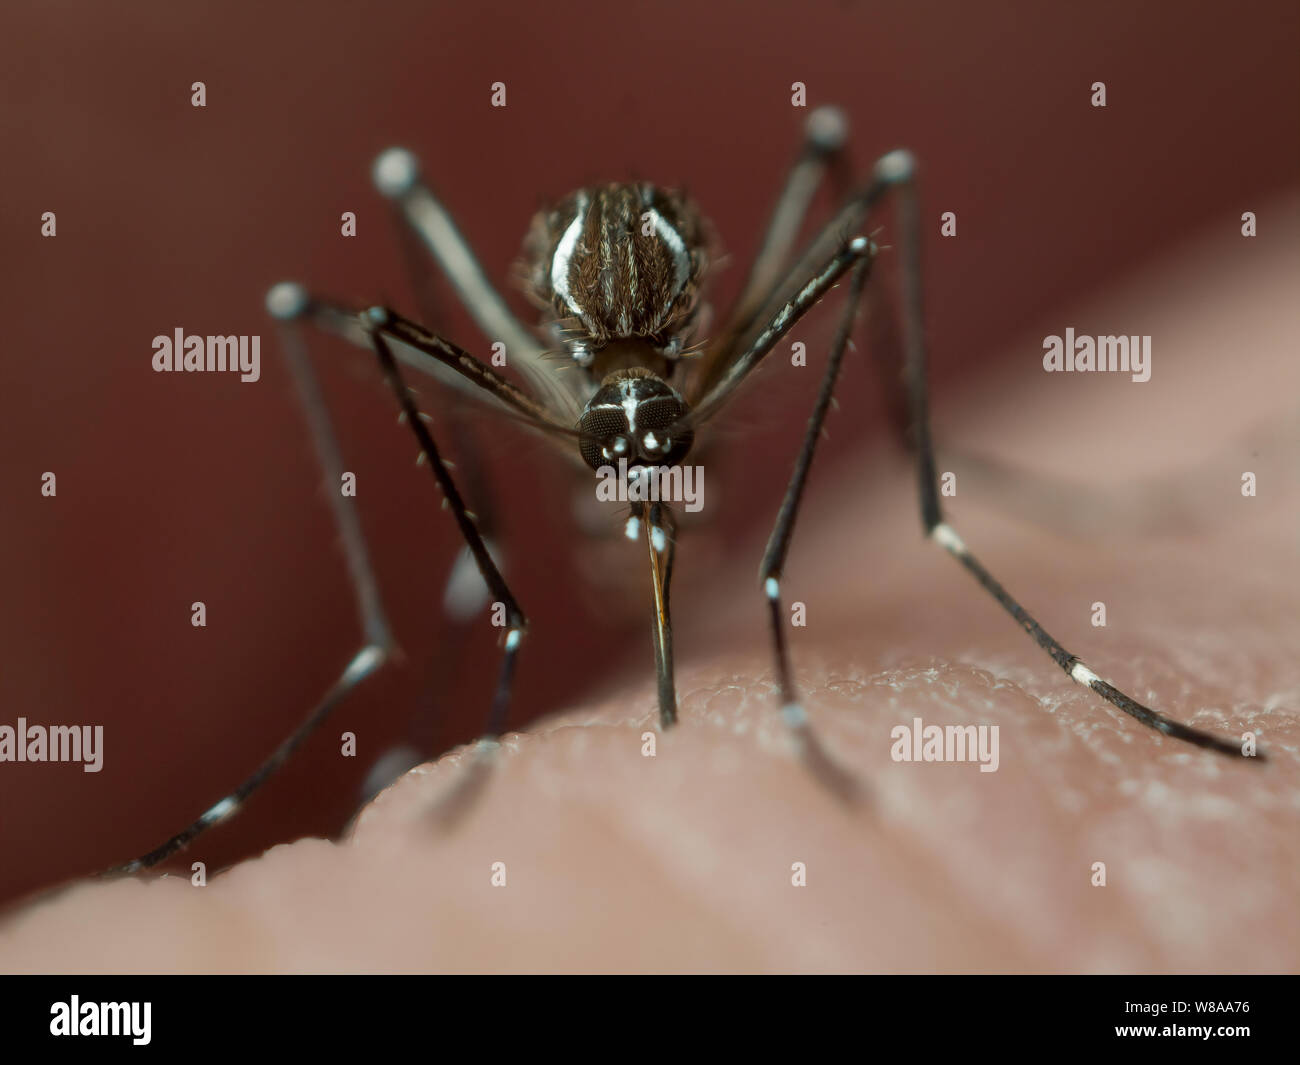 Aedes aegypti (febbre gialla mosquito) mordere la pelle umana, noto di zanzara di diffondere malattie tropicali quali zika, dengue, febbre gialla e chikungunya Foto Stock